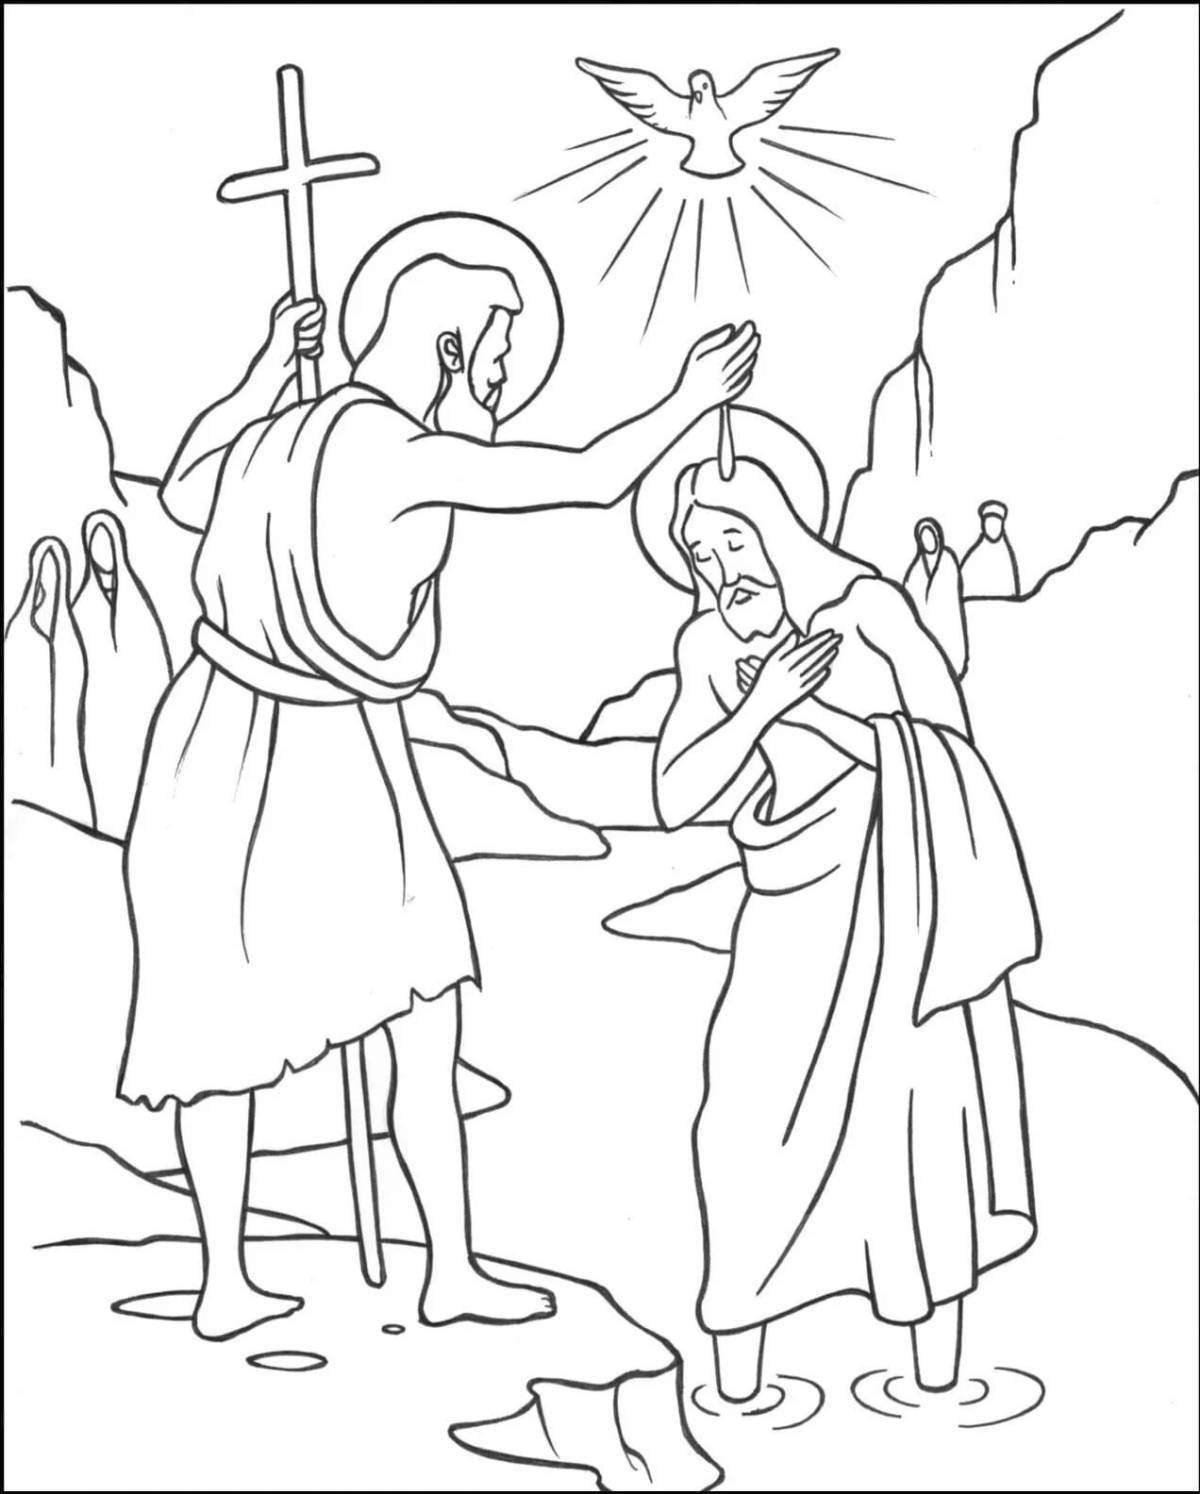 Раскраска радостная открытка на крещение